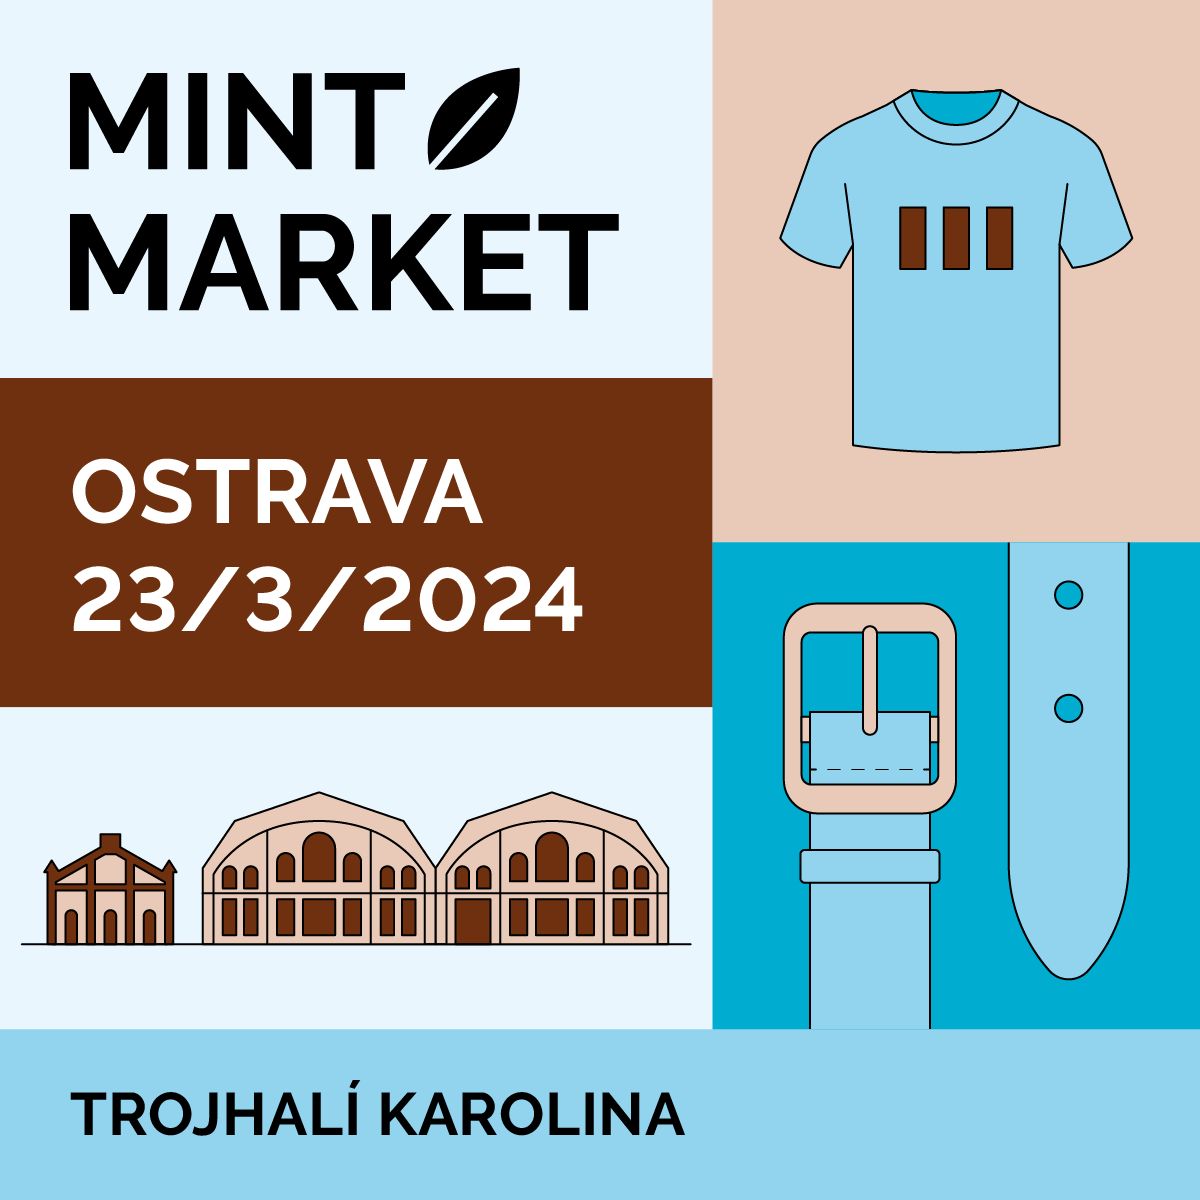 MINT Market v Trojhalí